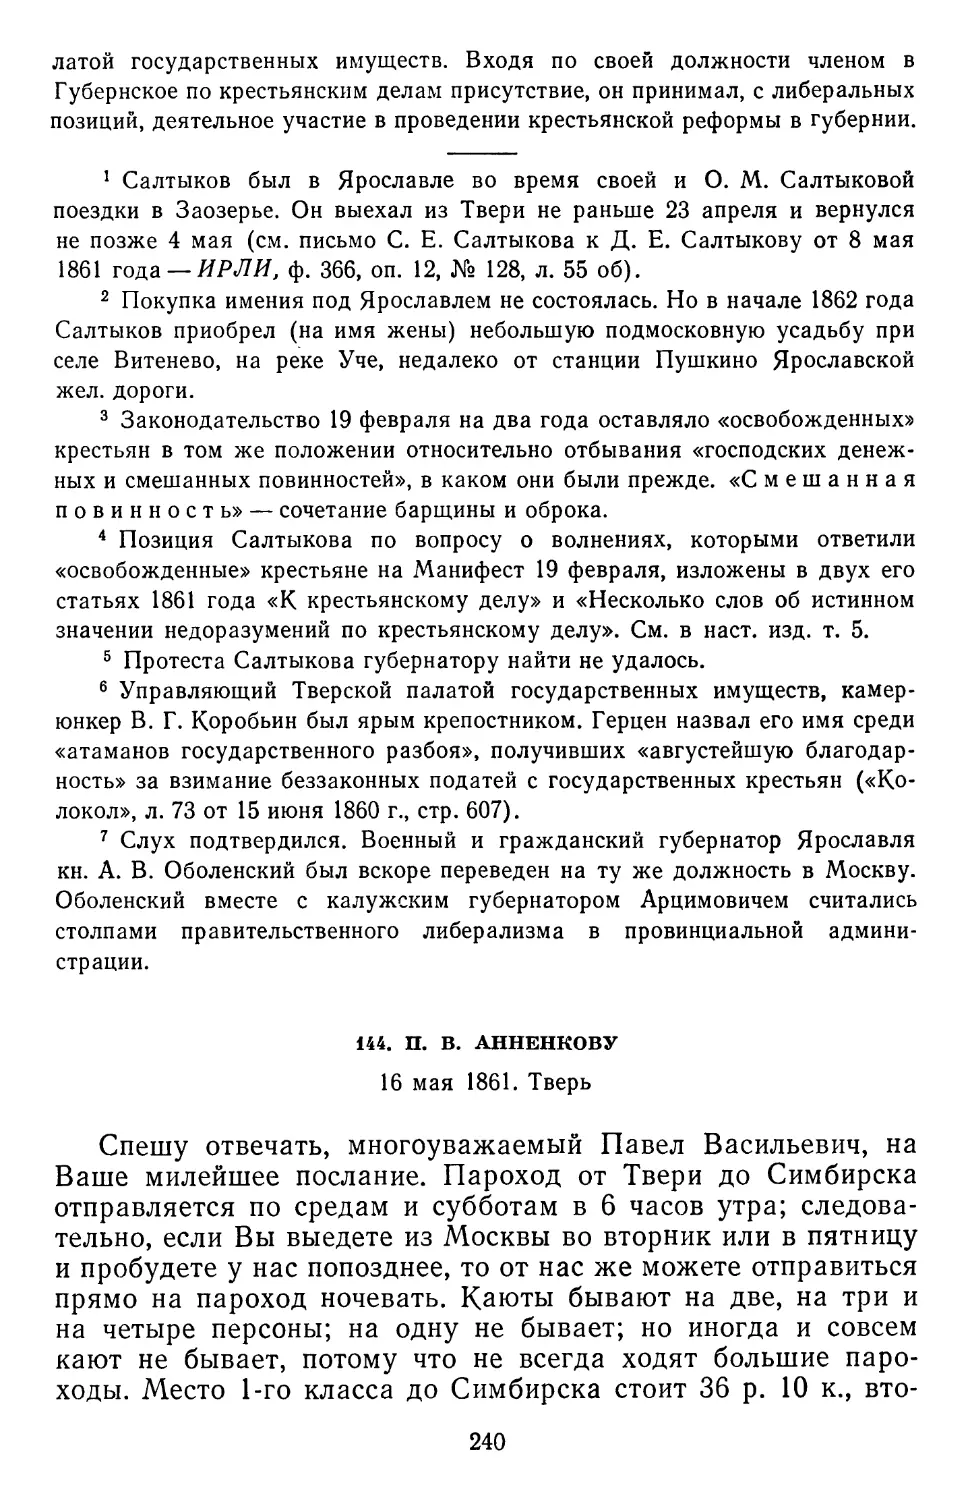 144.П.В.Анненкову.16 мая1861.Тверь